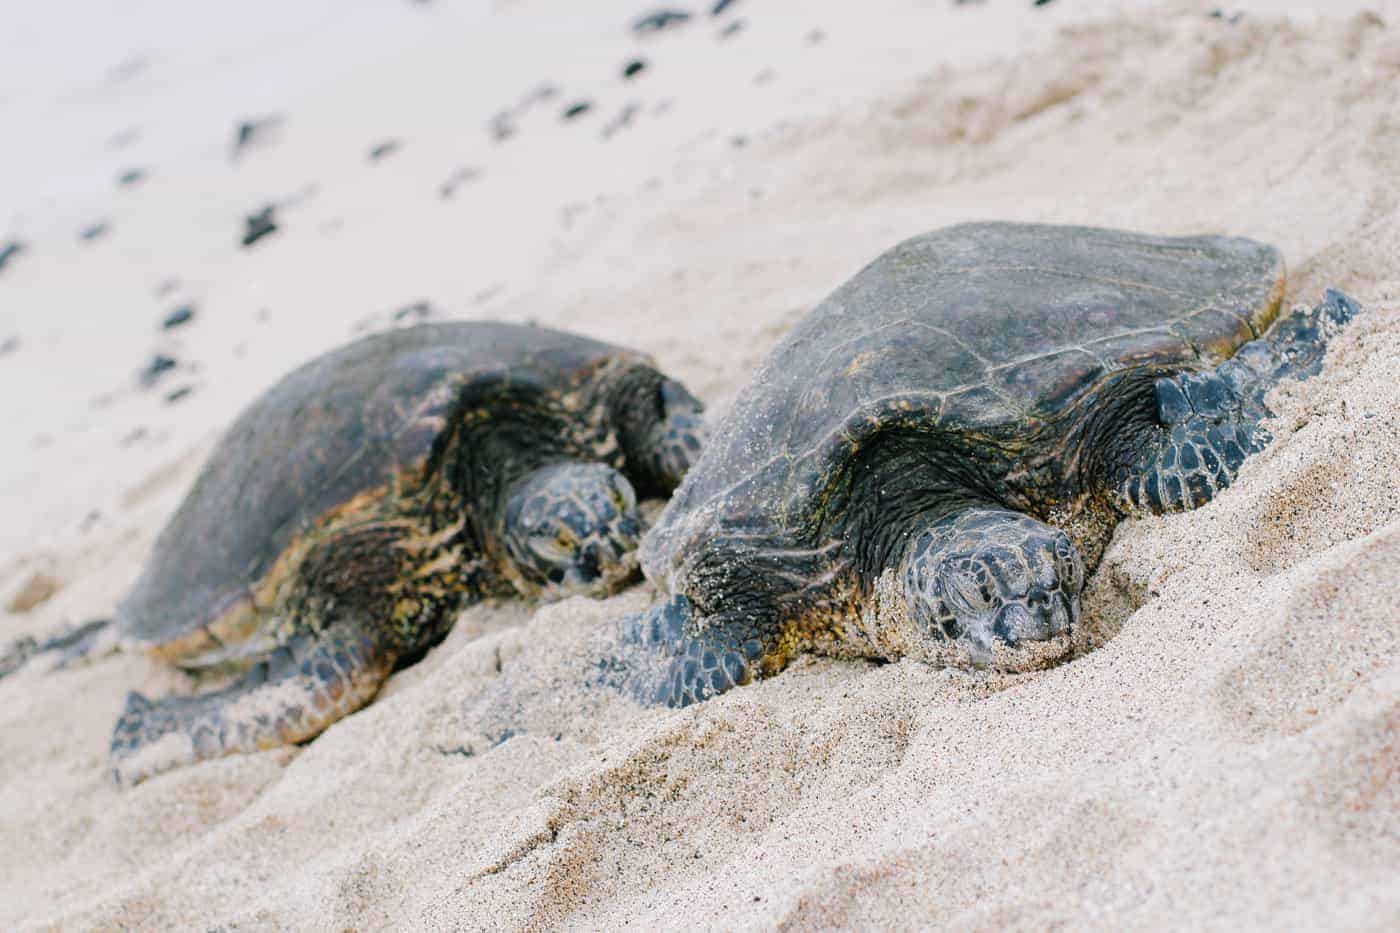 hualalai turtles